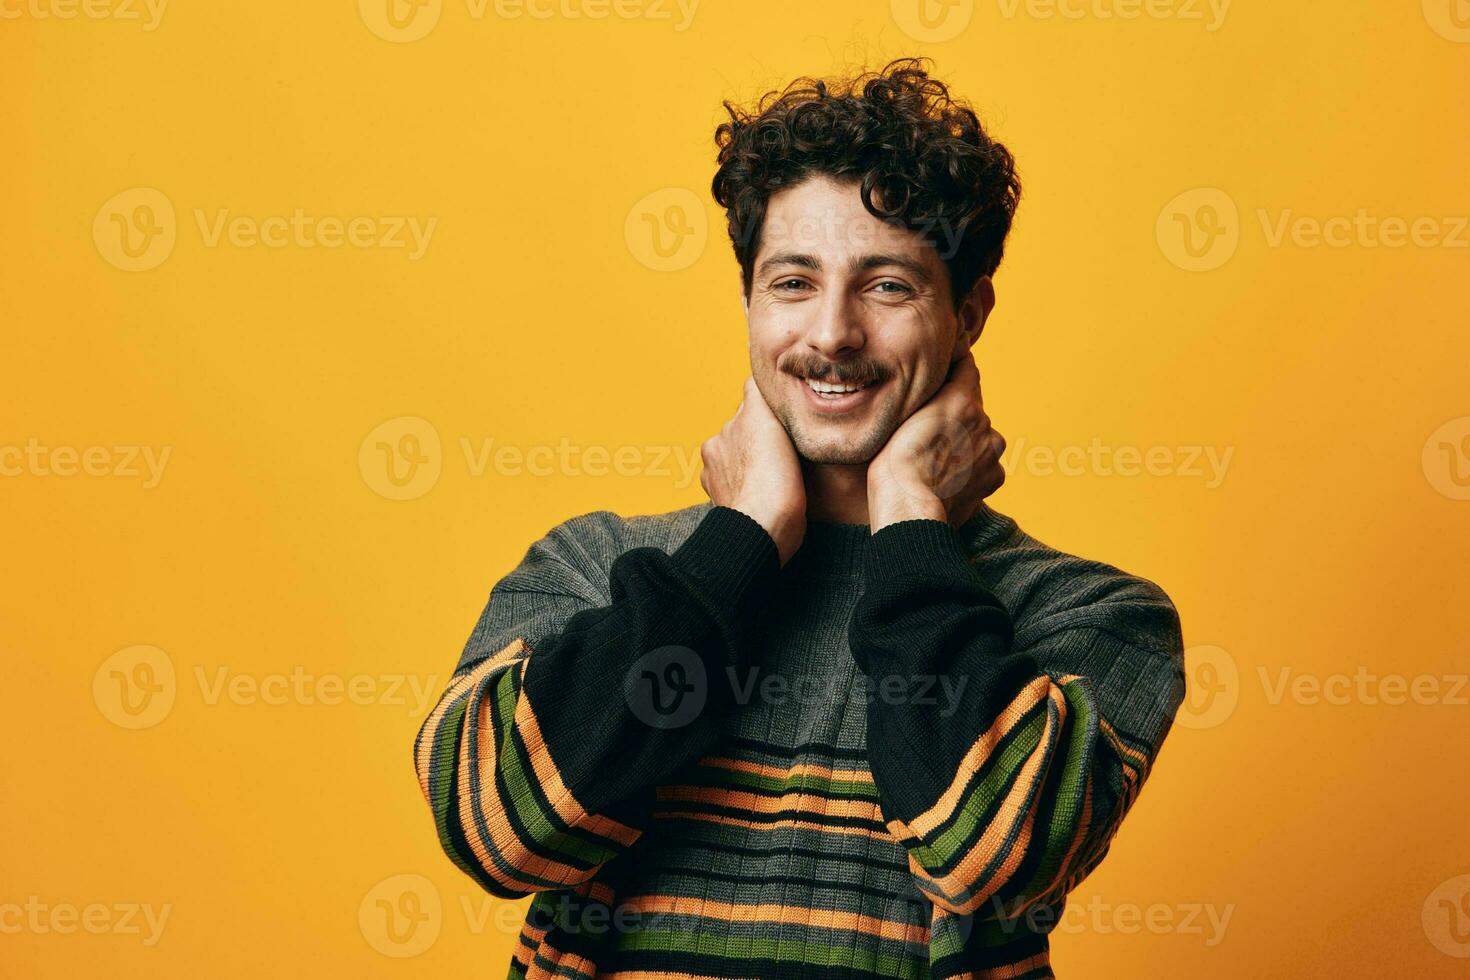 Mann Sweatshirt heiter Mode glücklich Porträt Schüler Lächeln Orange gut aussehend Hintergrund attraktiv zuversichtlich modisch foto